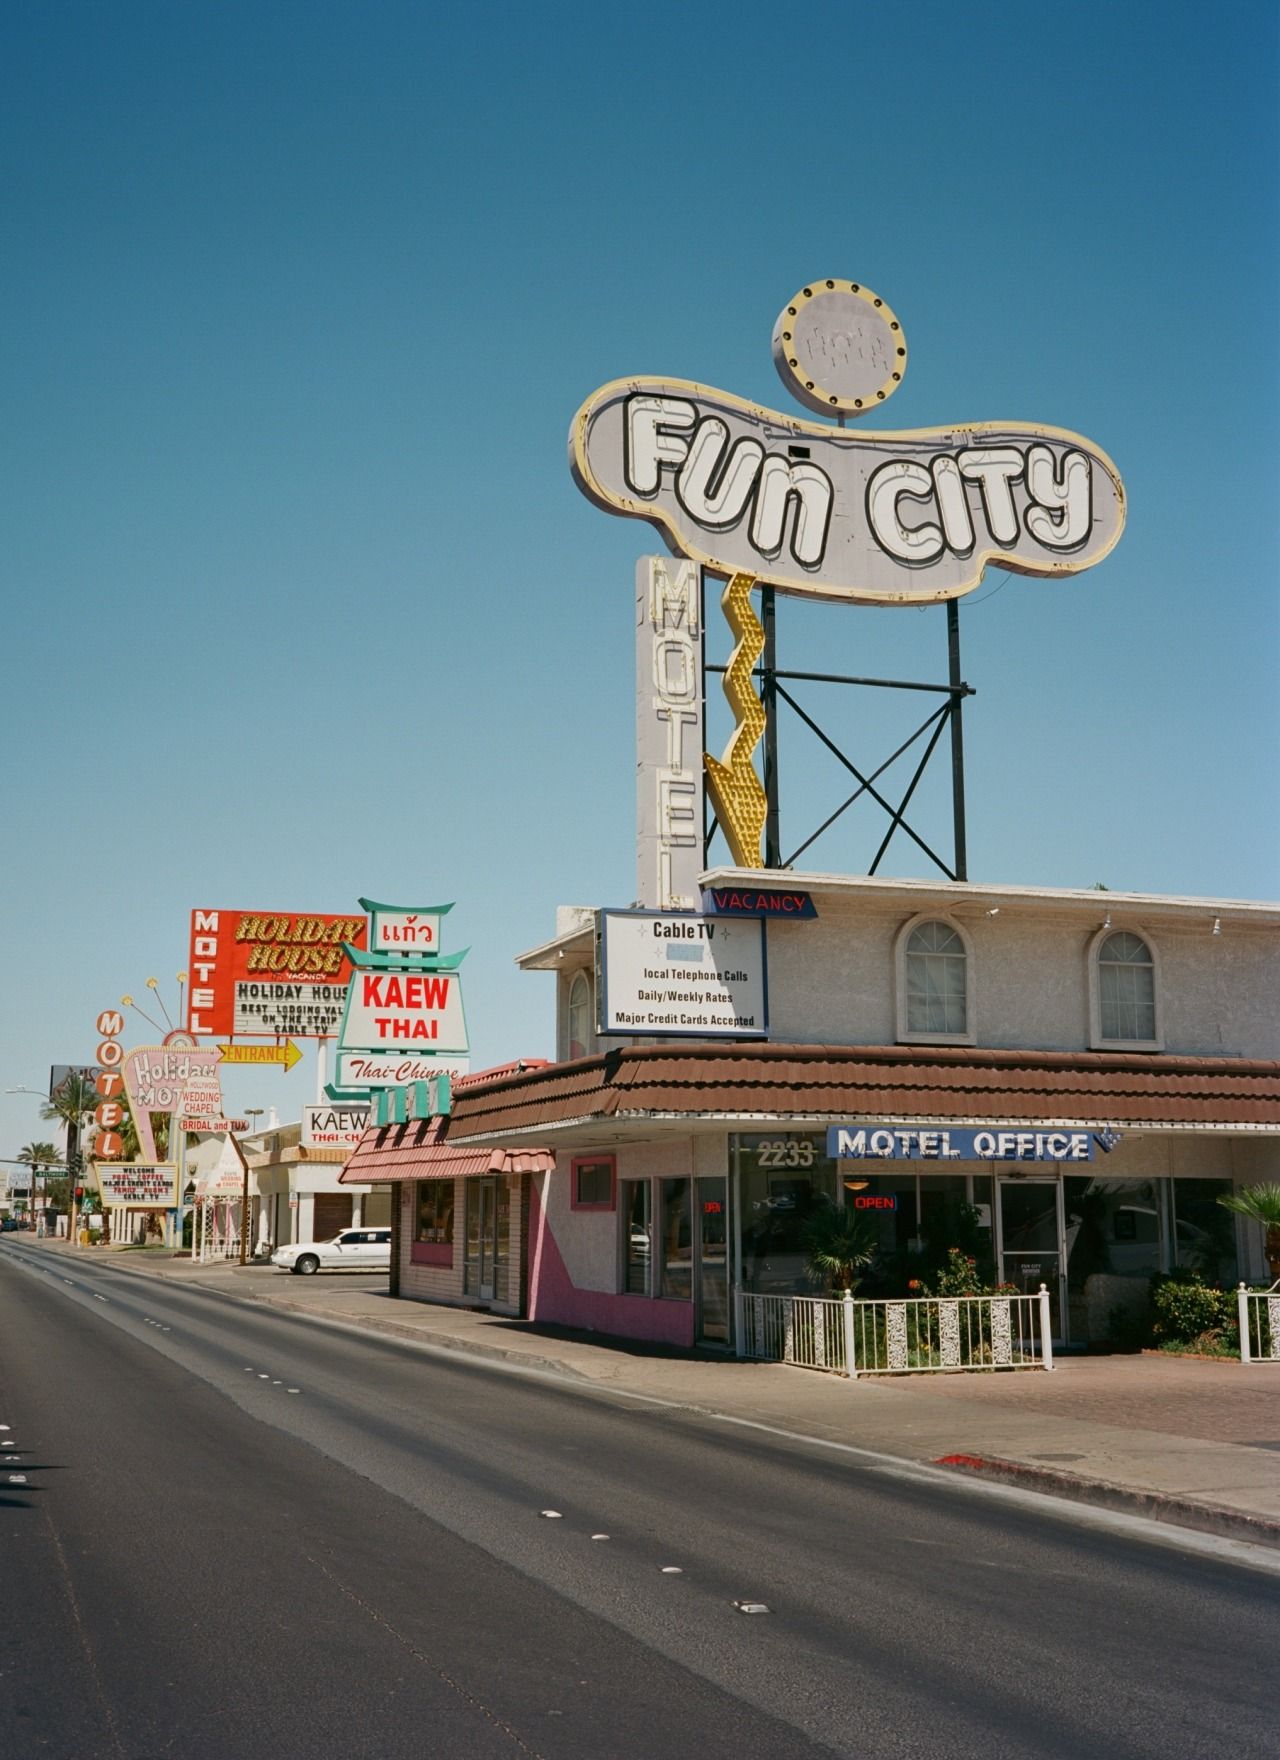 Fun City Motel in Las Vegas, formerly the Glenn Vegas Motel. It was ...